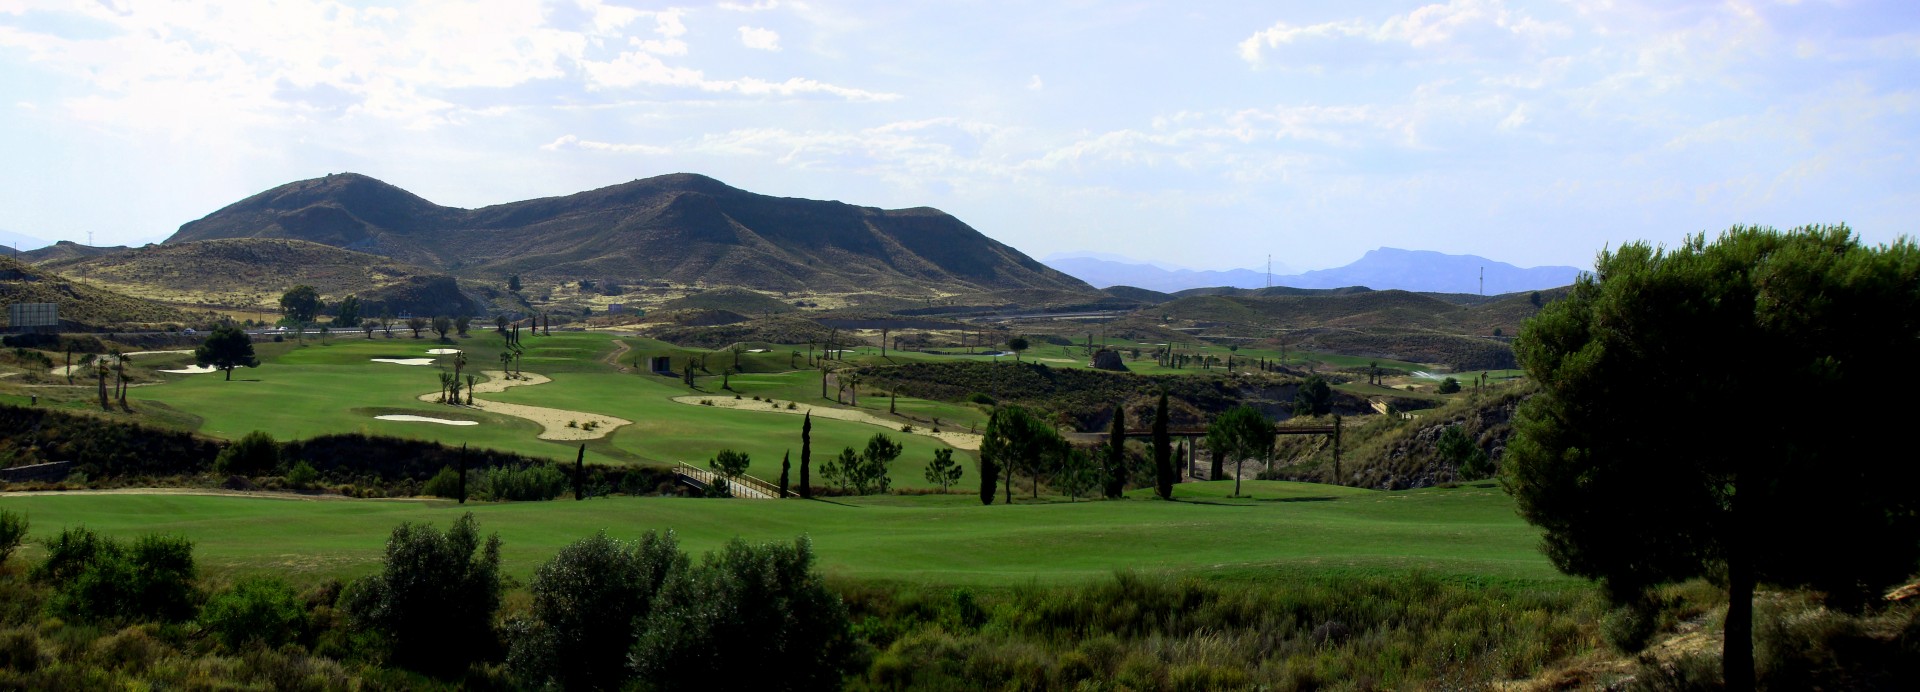 Lorca Resort Golf Club  | Golfové zájezdy, golfová dovolená, luxusní golf